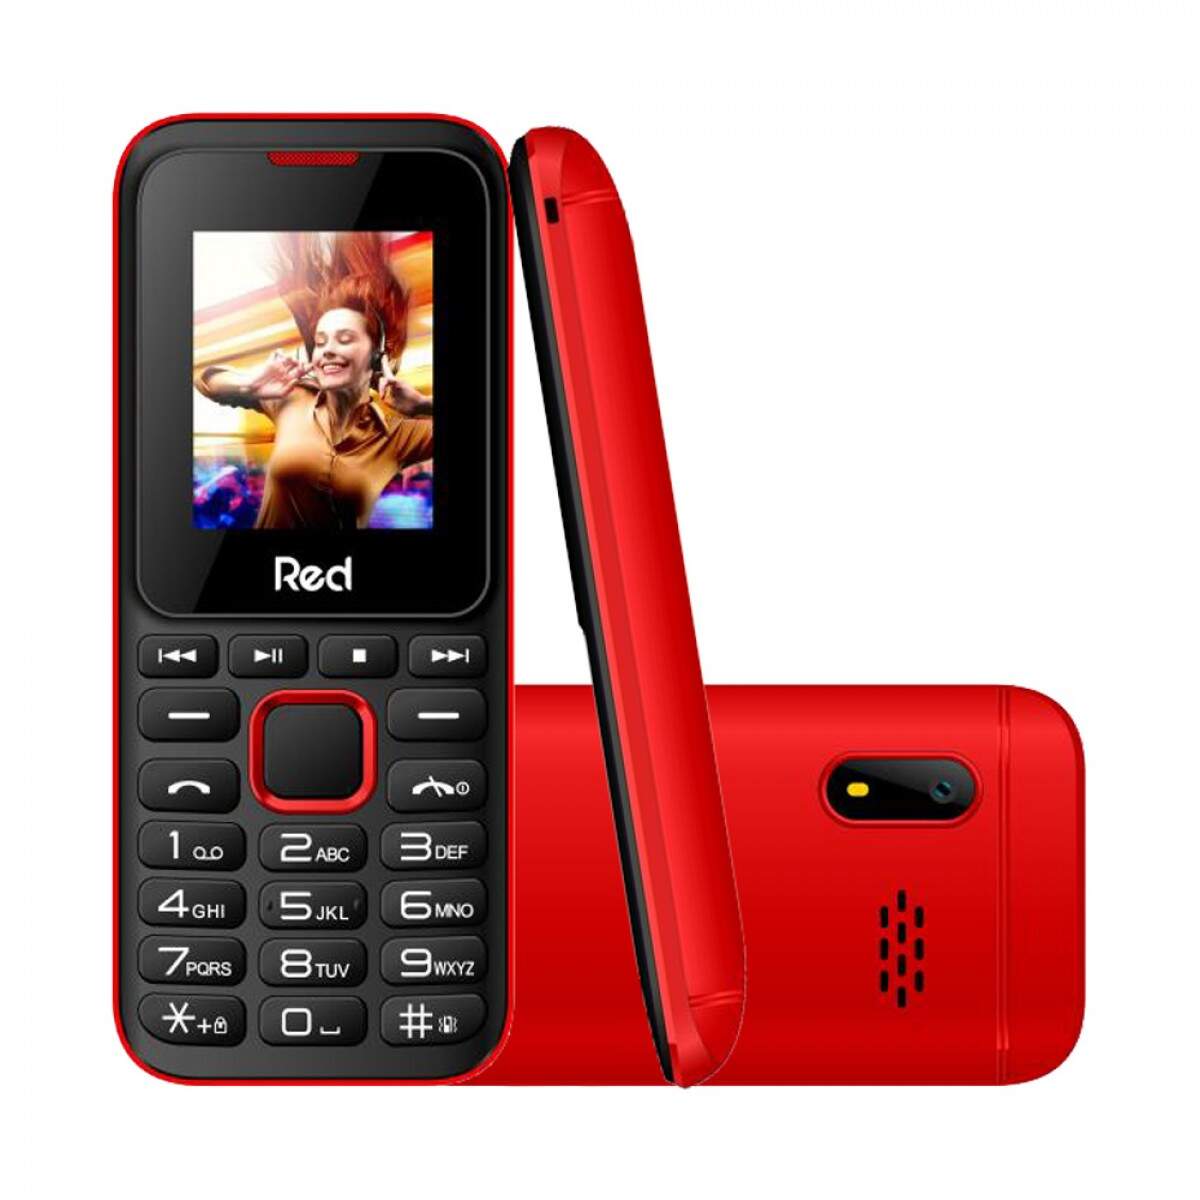 Celular Fit Music II Red Mobile M011G, Tela 1.8, Câmera, FM Wireless,  Vibracall, Memória expansível até 32GB - Preto/Vermelho